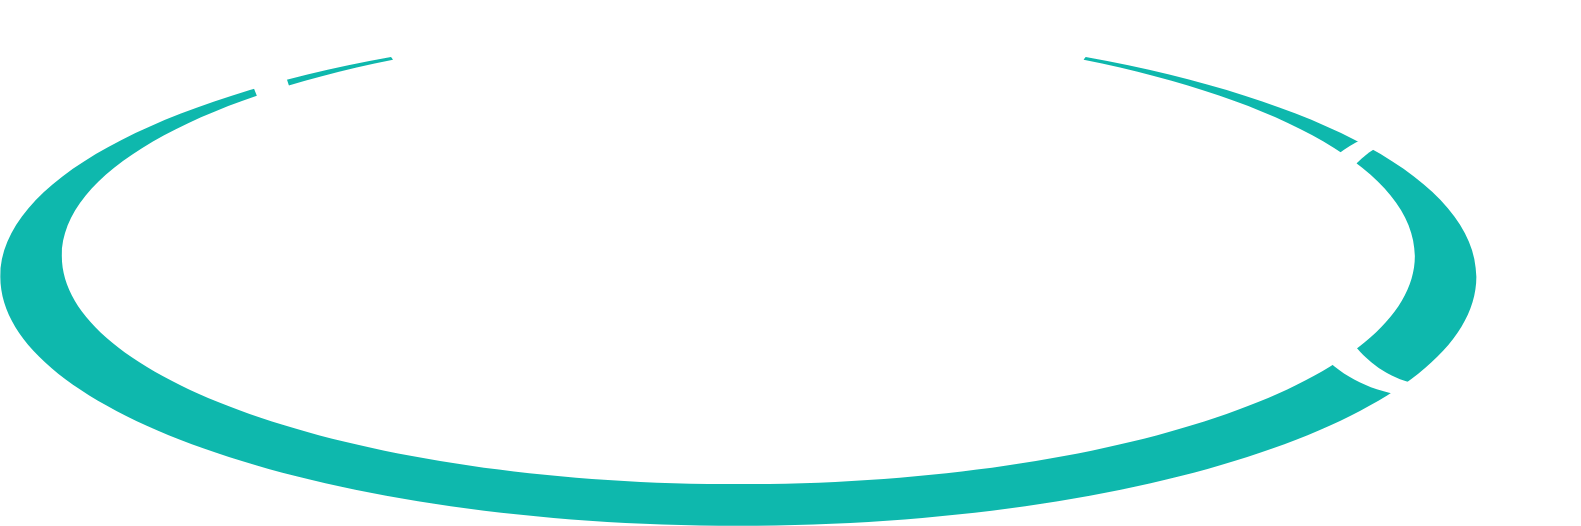 Veeco
 logo pour fonds sombres (PNG transparent)